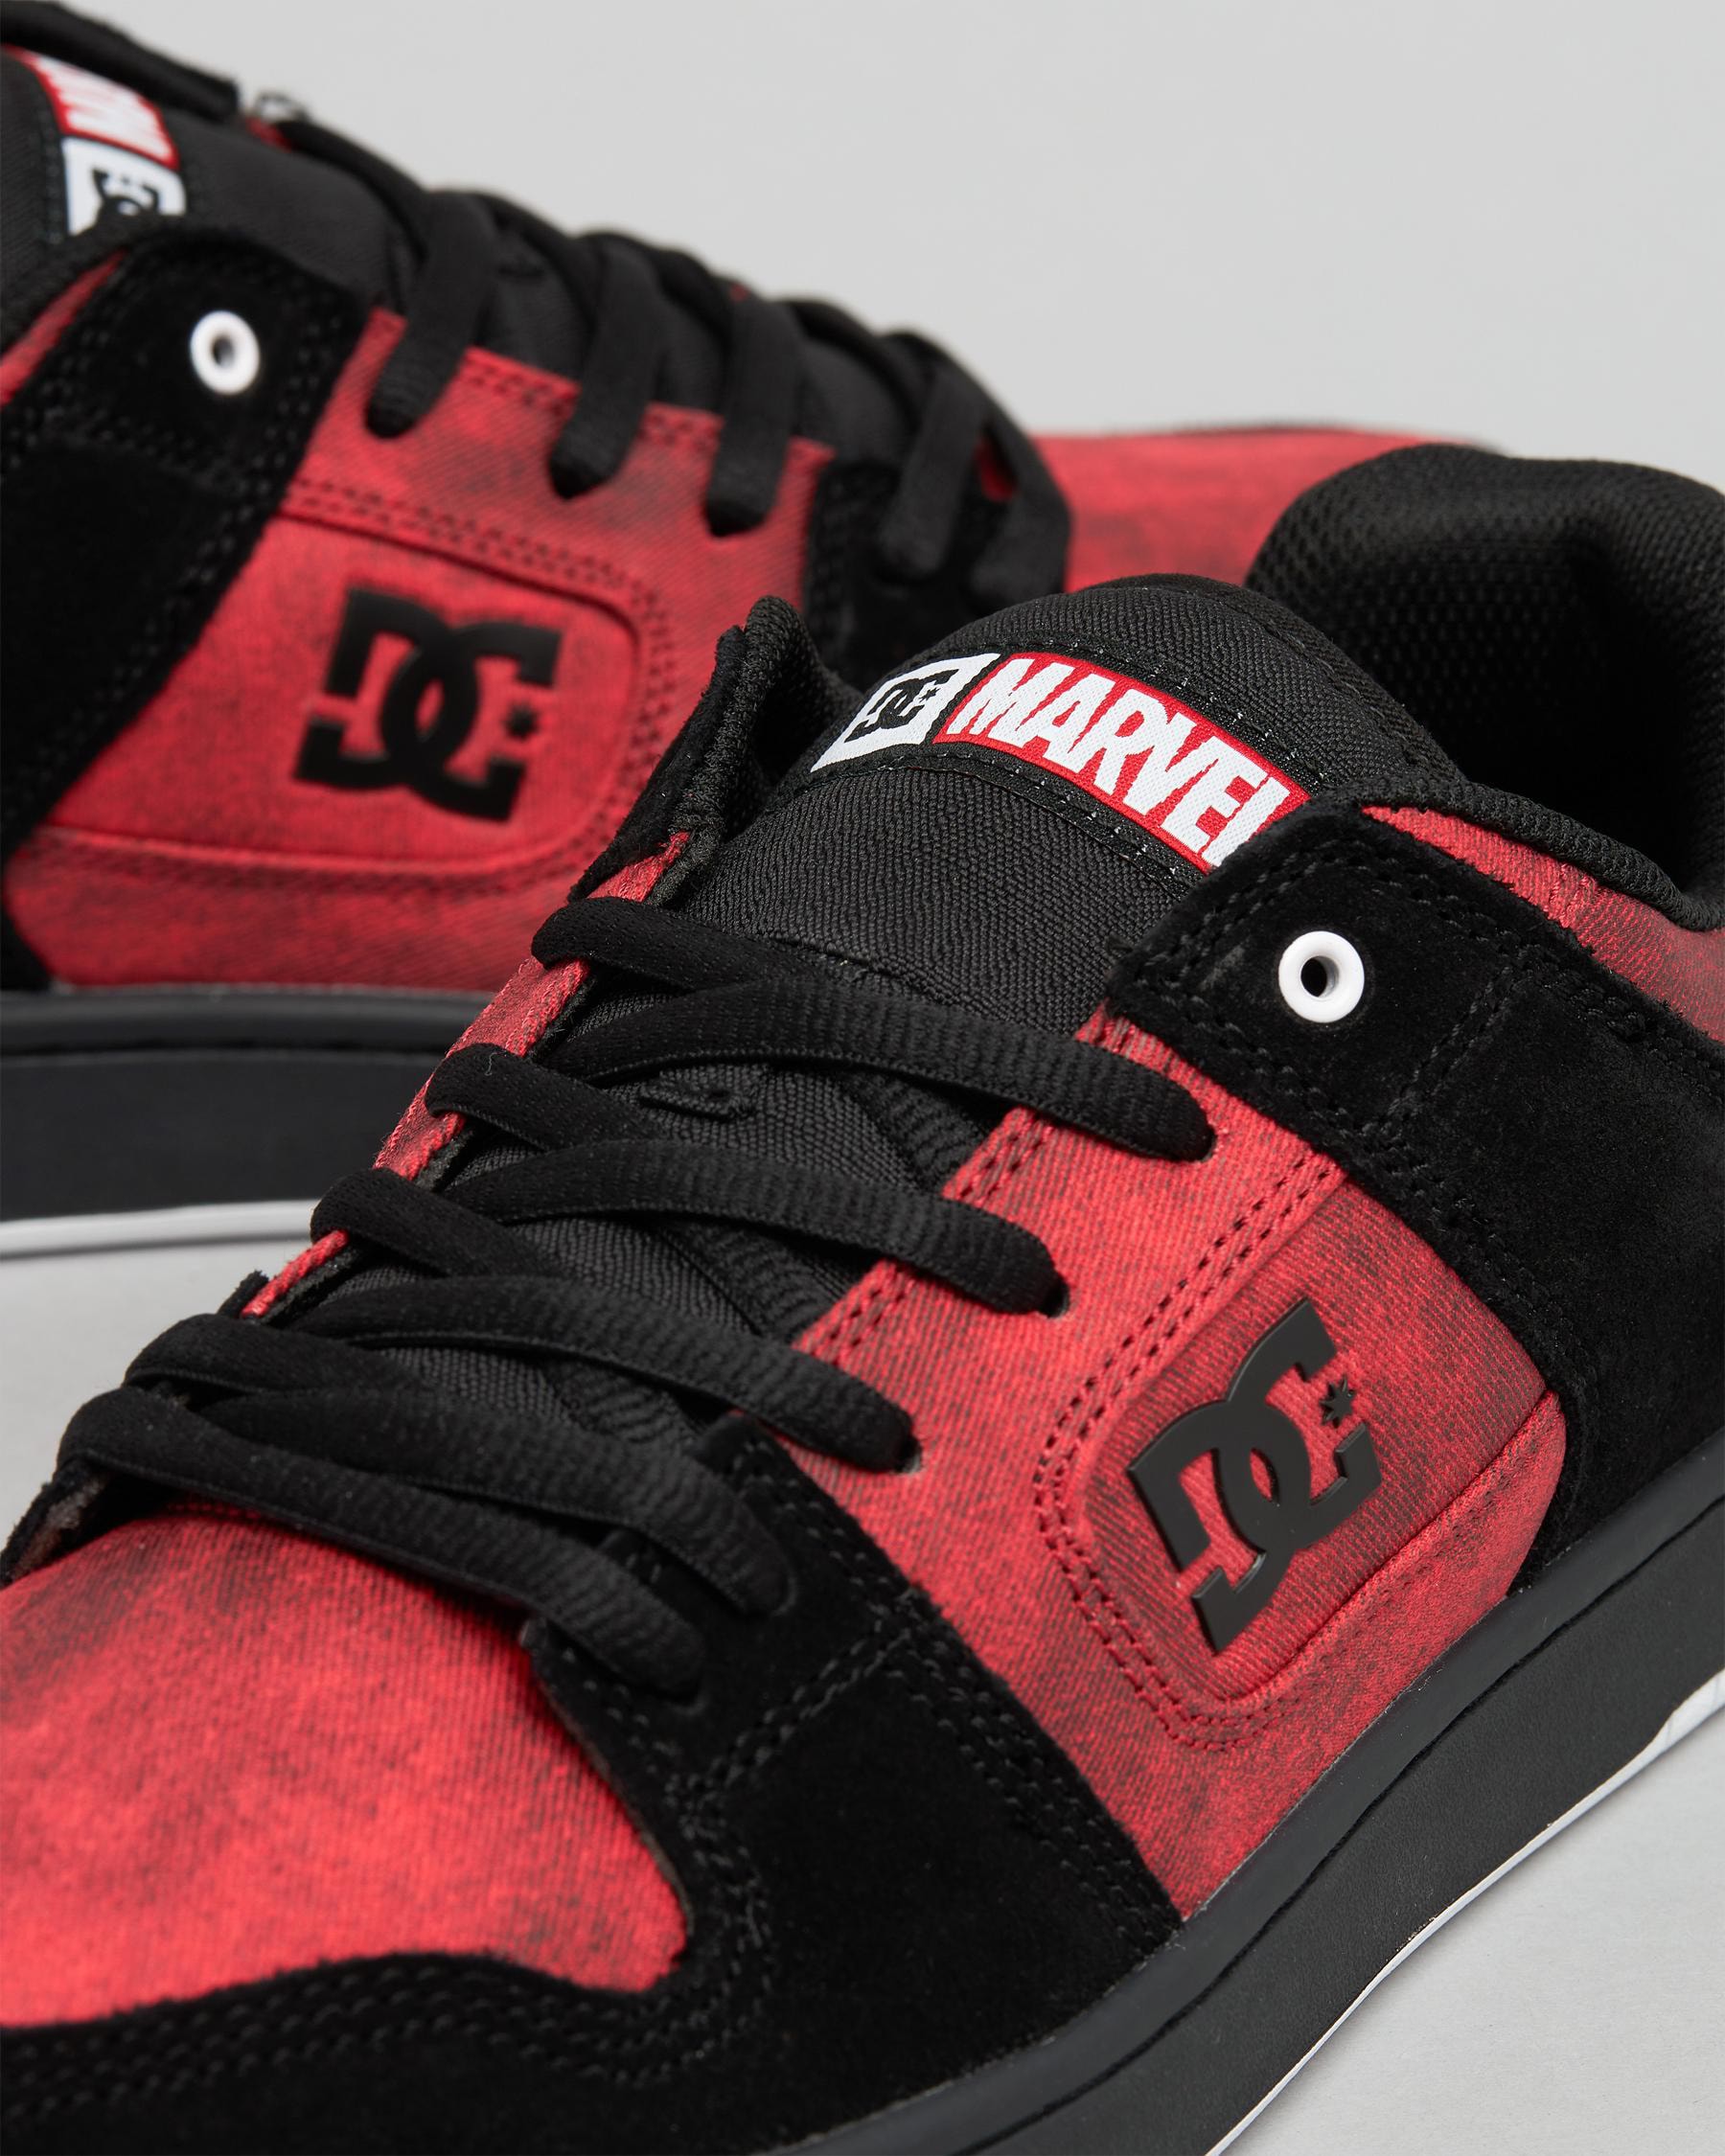 DC Deadpool Manteca 4 Skate Shoes